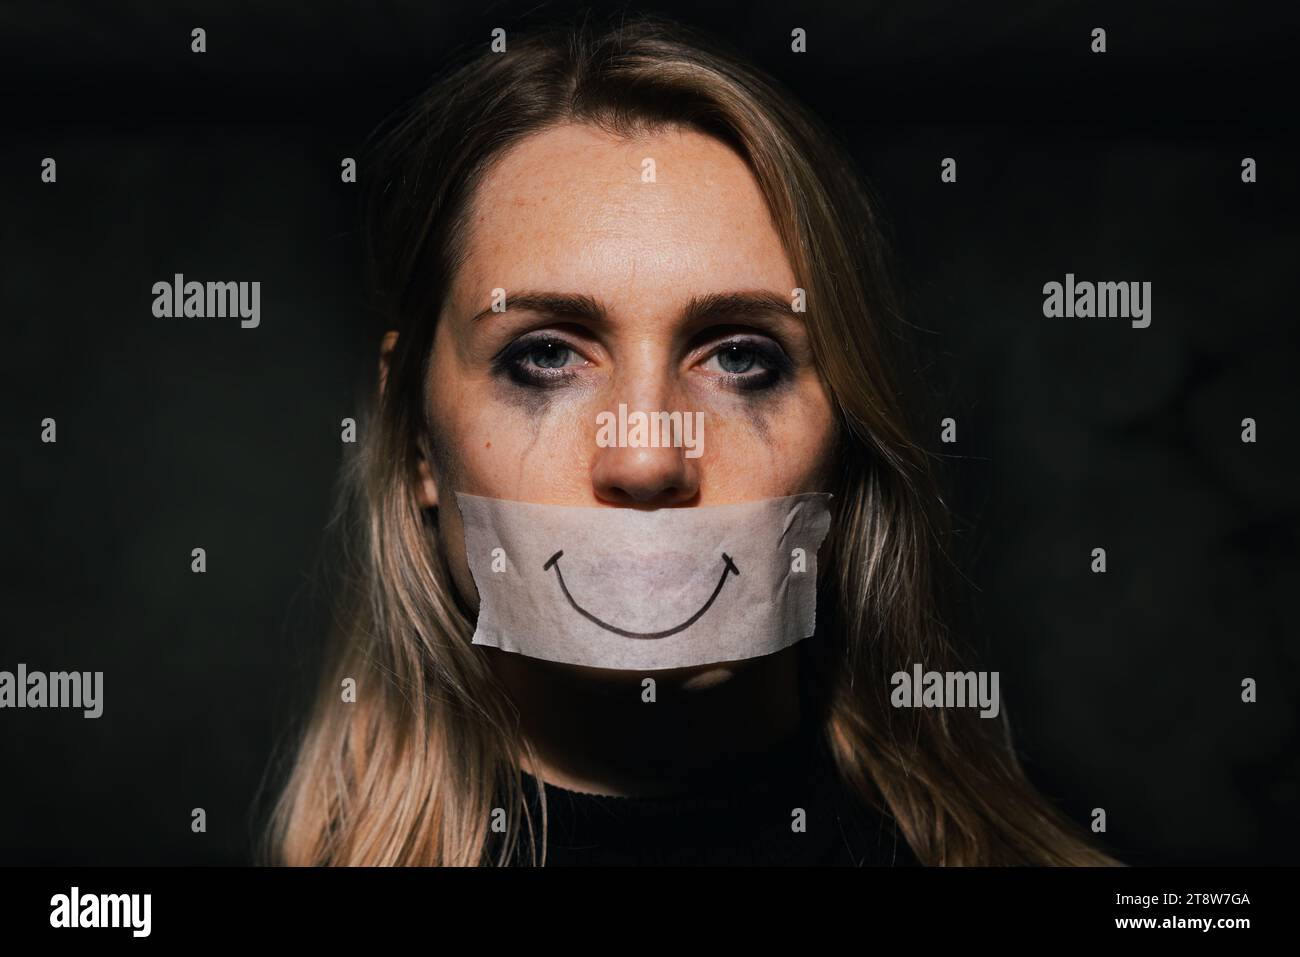 abusi e violenza domestica. triste donna depressa nasconde la bocca dietro un sorriso finto disegnato su nastro di carta. depressione e salute mentale Foto Stock